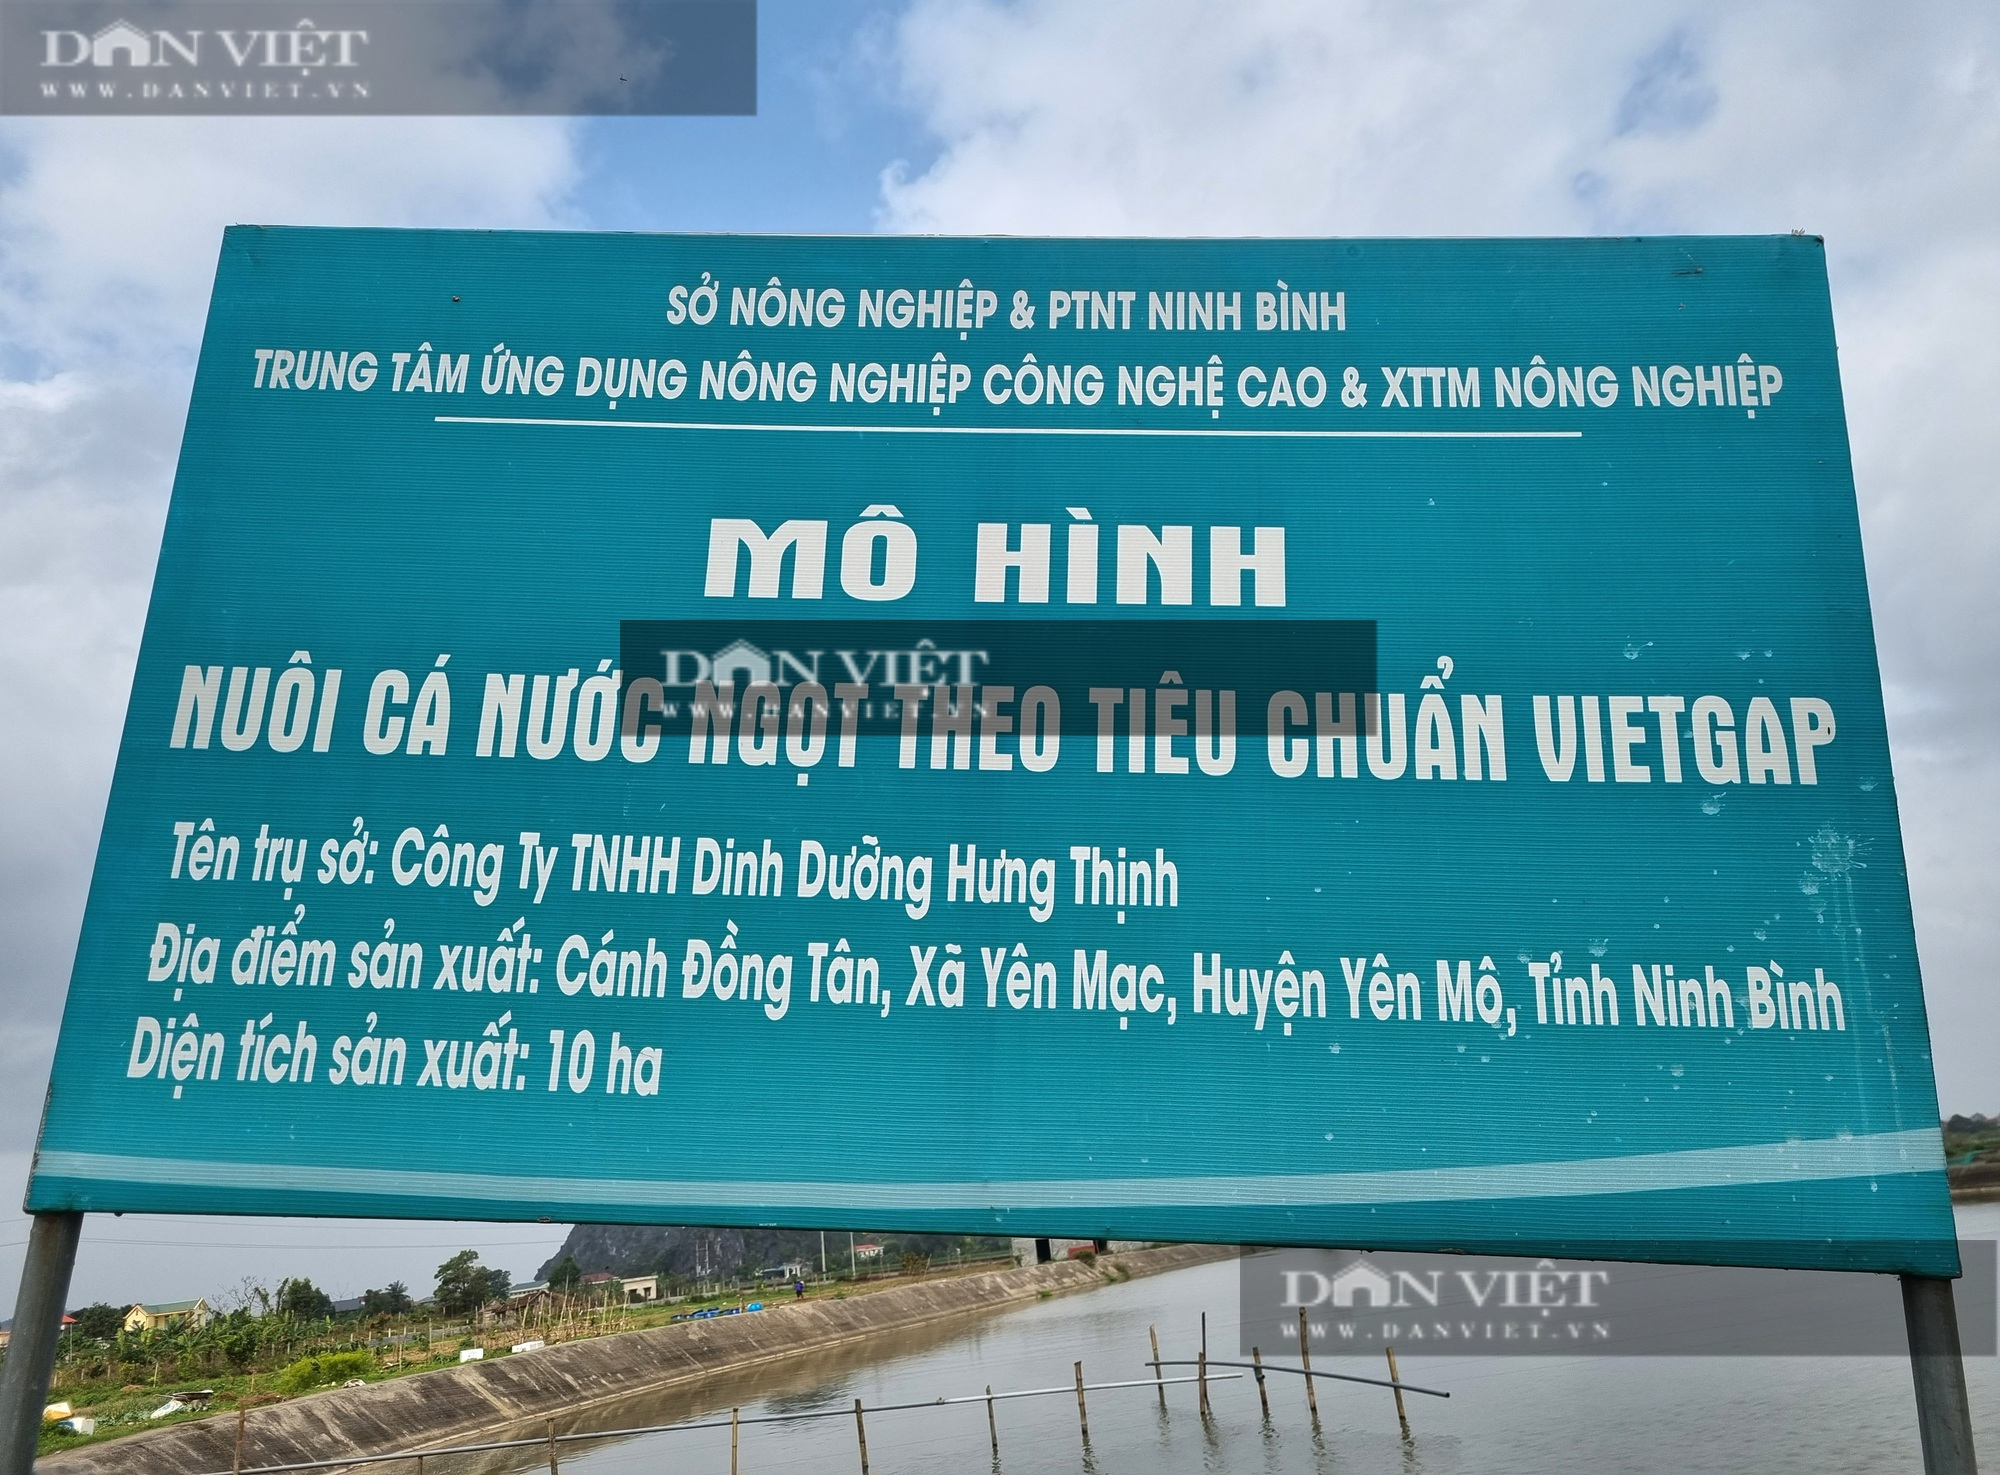 Nuôi cá chạch sụn, một nông dân ở Ninh Bình lãi 2 tỉ đồng - Ảnh 10.